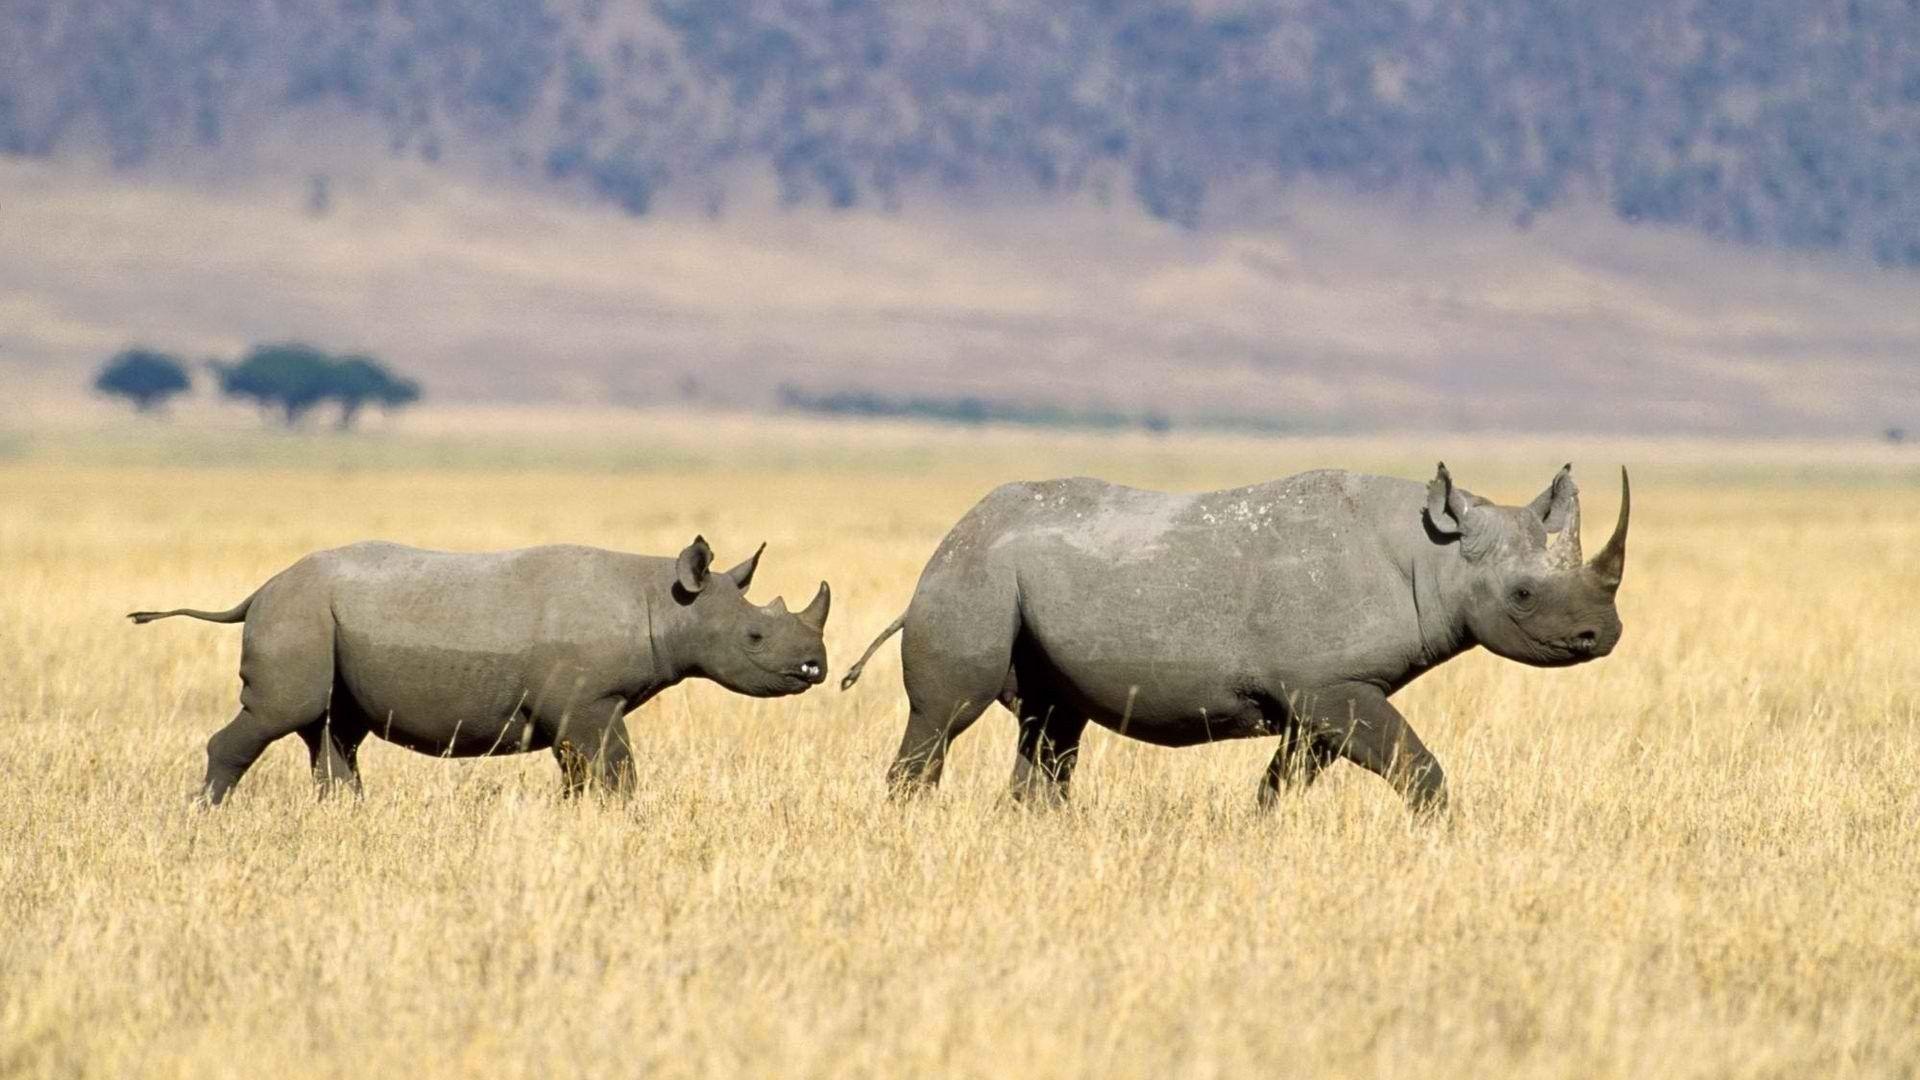 Tanzania Tag wallpaper: African Tanzania National Park Animal Eye